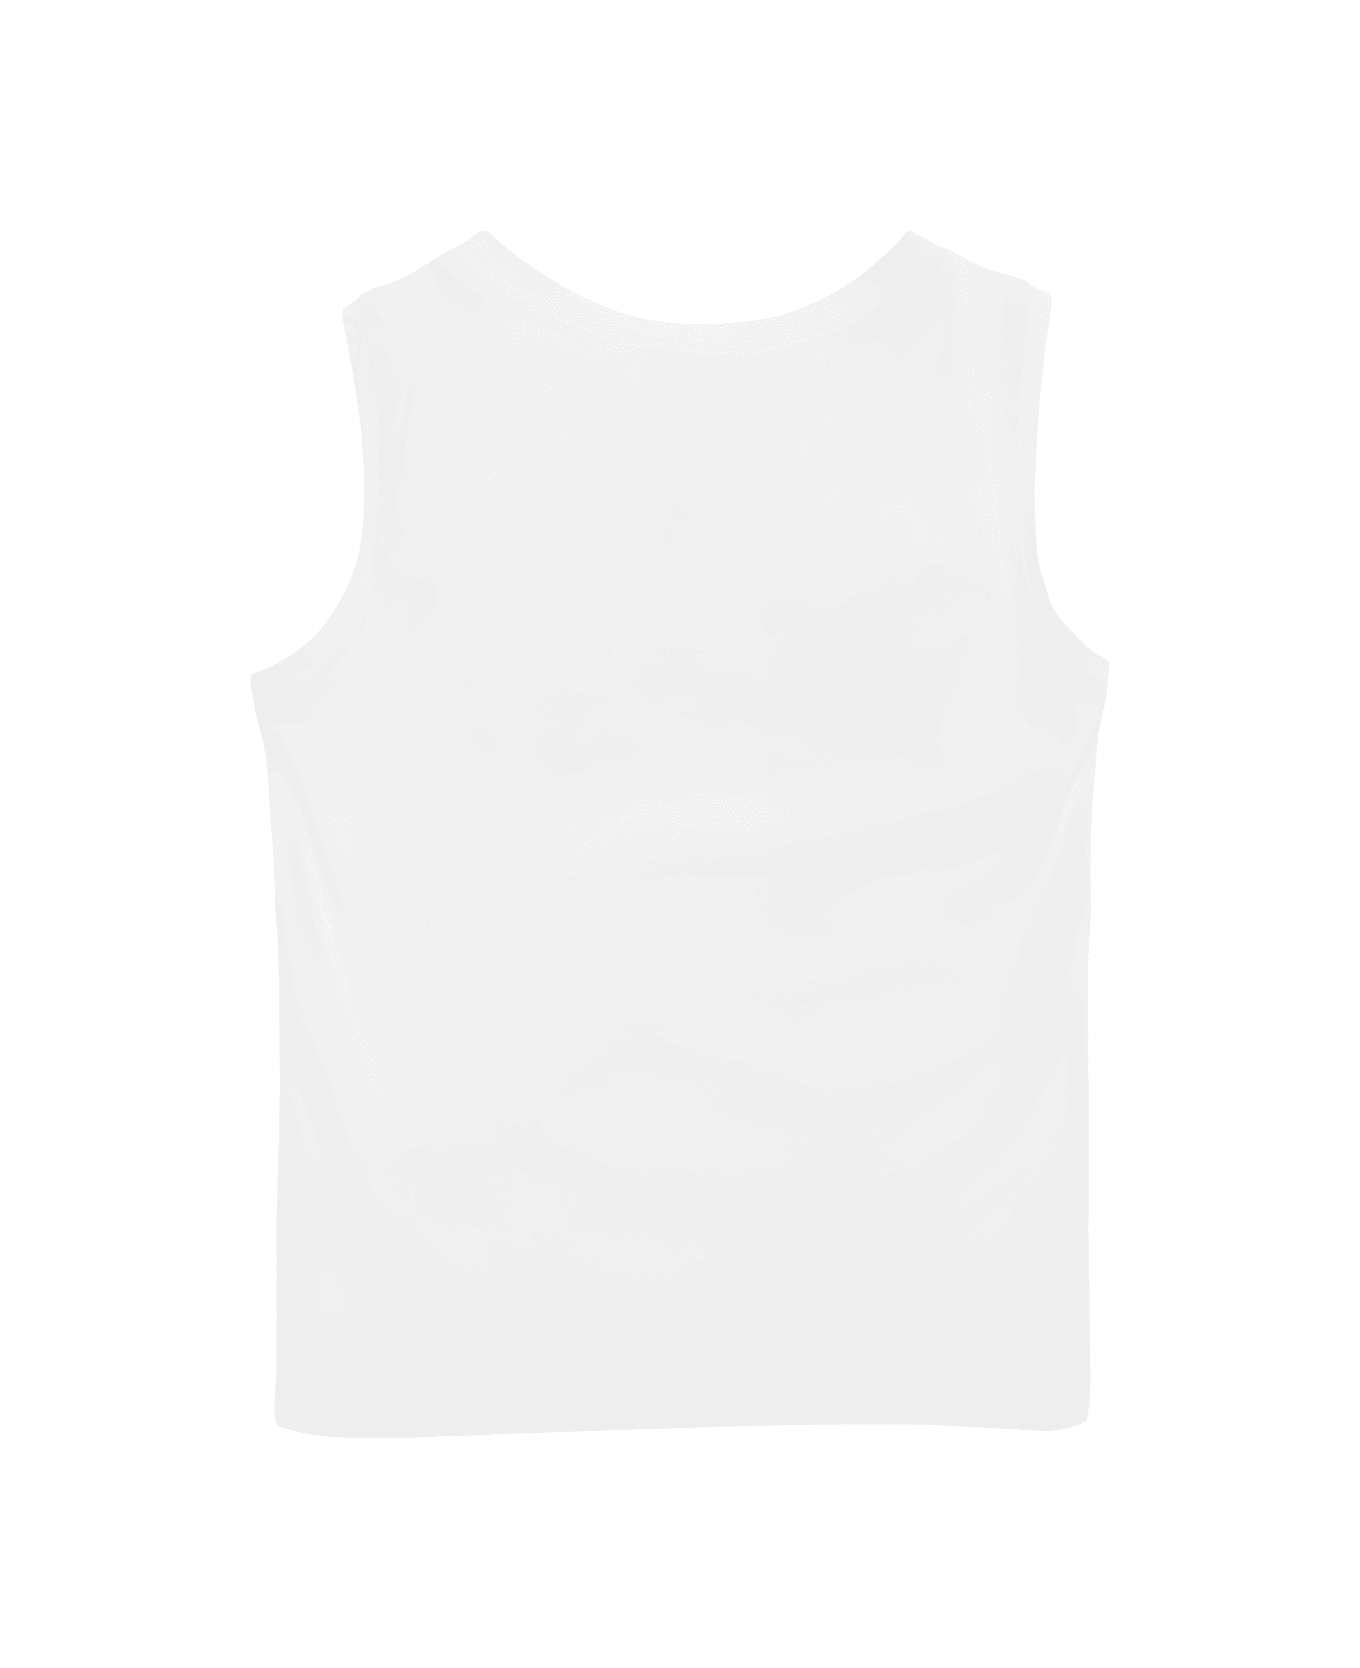 Monnalisa 17c60732010099 - White Tシャツ＆ポロシャツ